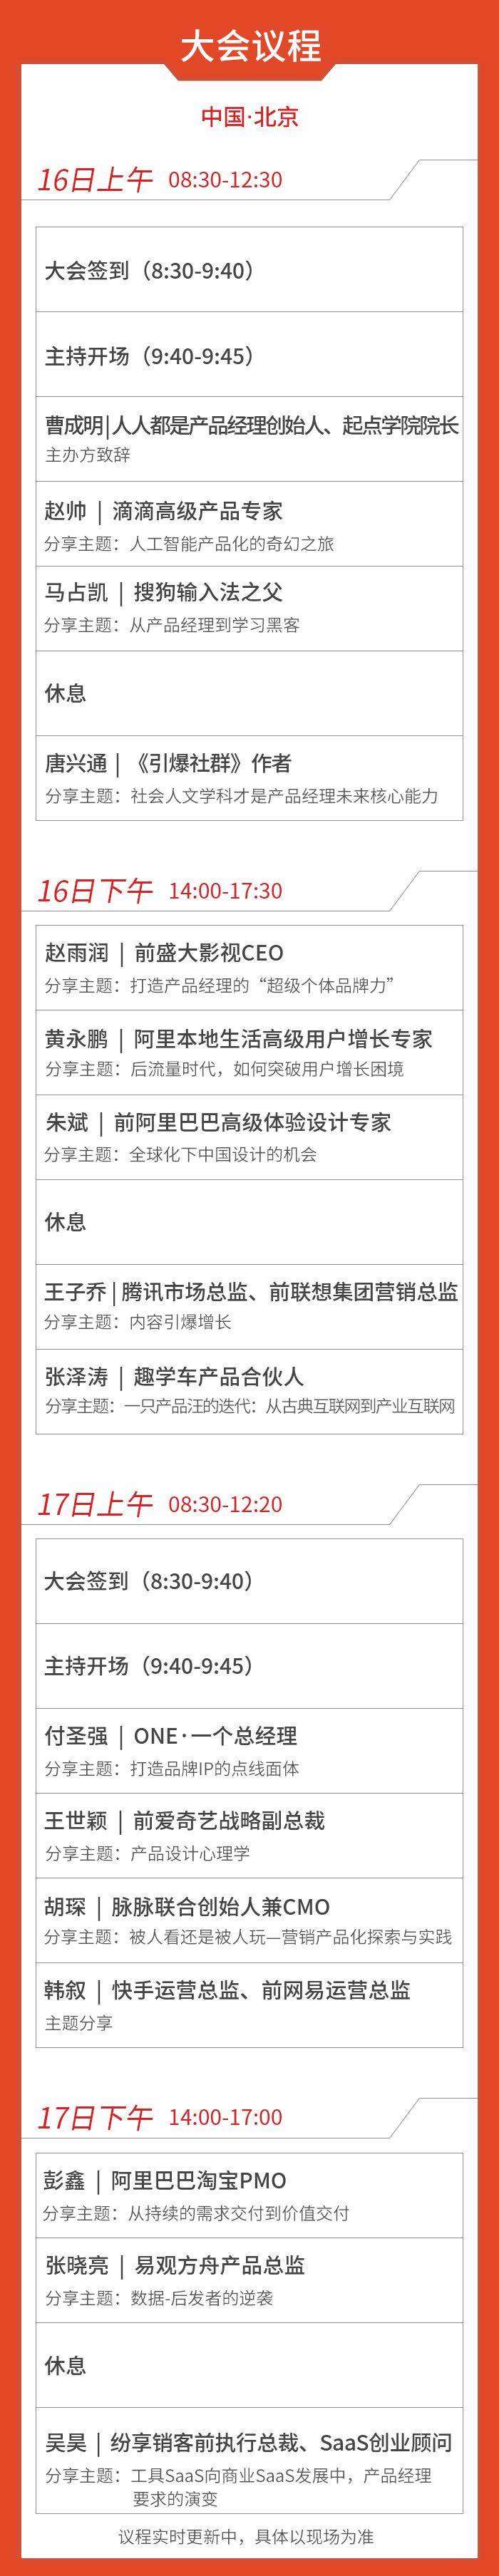 北京大会议程图1115晚上_01.jpg